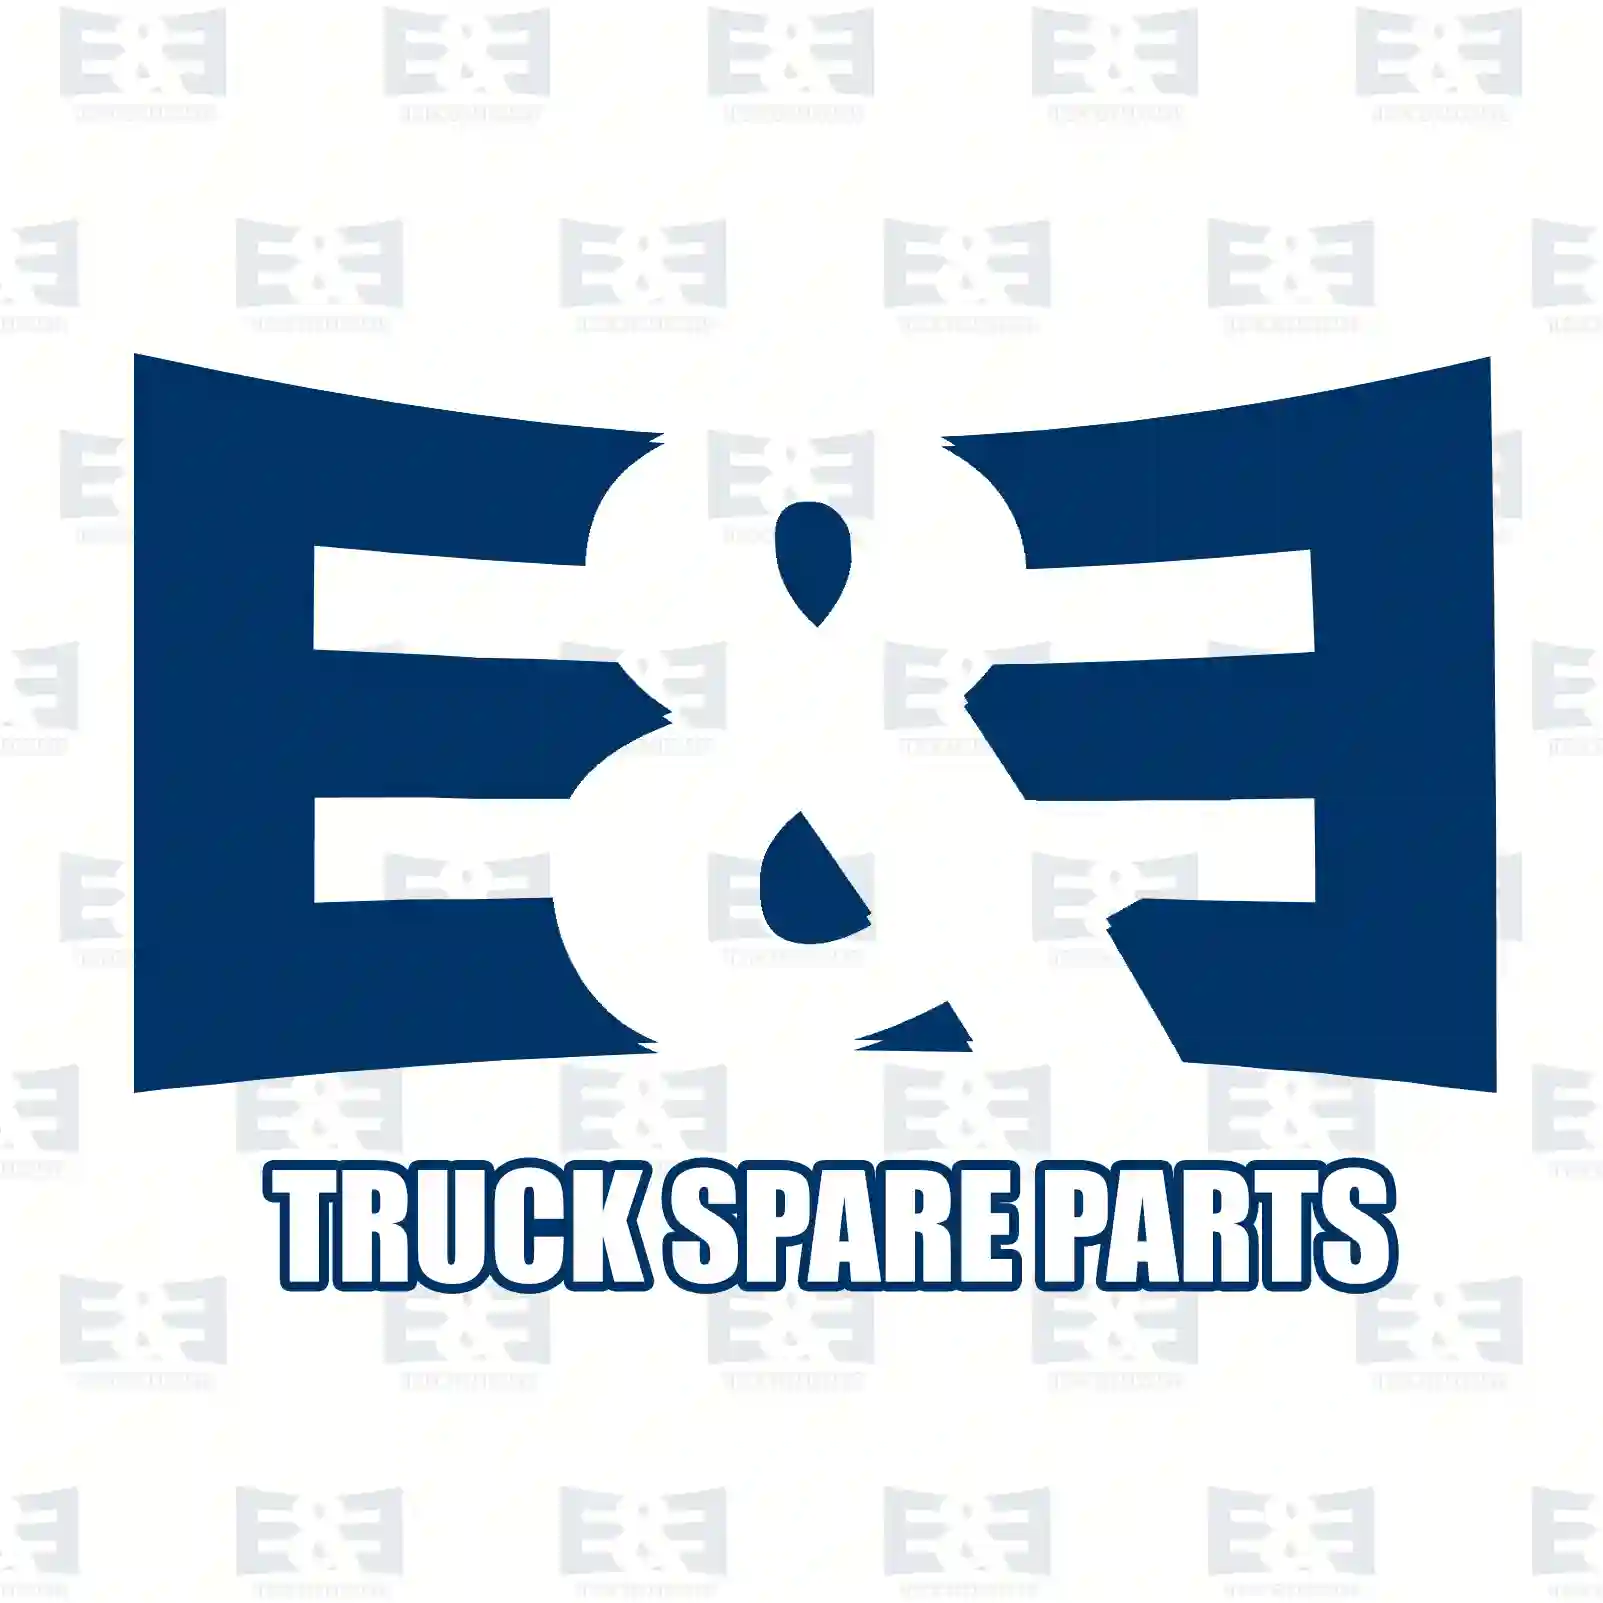 Clutch kit, 2E2288989, 81303050234S ||  2E2288989 E&E Truck Spare Parts | Truck Spare Parts, Auotomotive Spare Parts Clutch kit, 2E2288989, 81303050234S ||  2E2288989 E&E Truck Spare Parts | Truck Spare Parts, Auotomotive Spare Parts